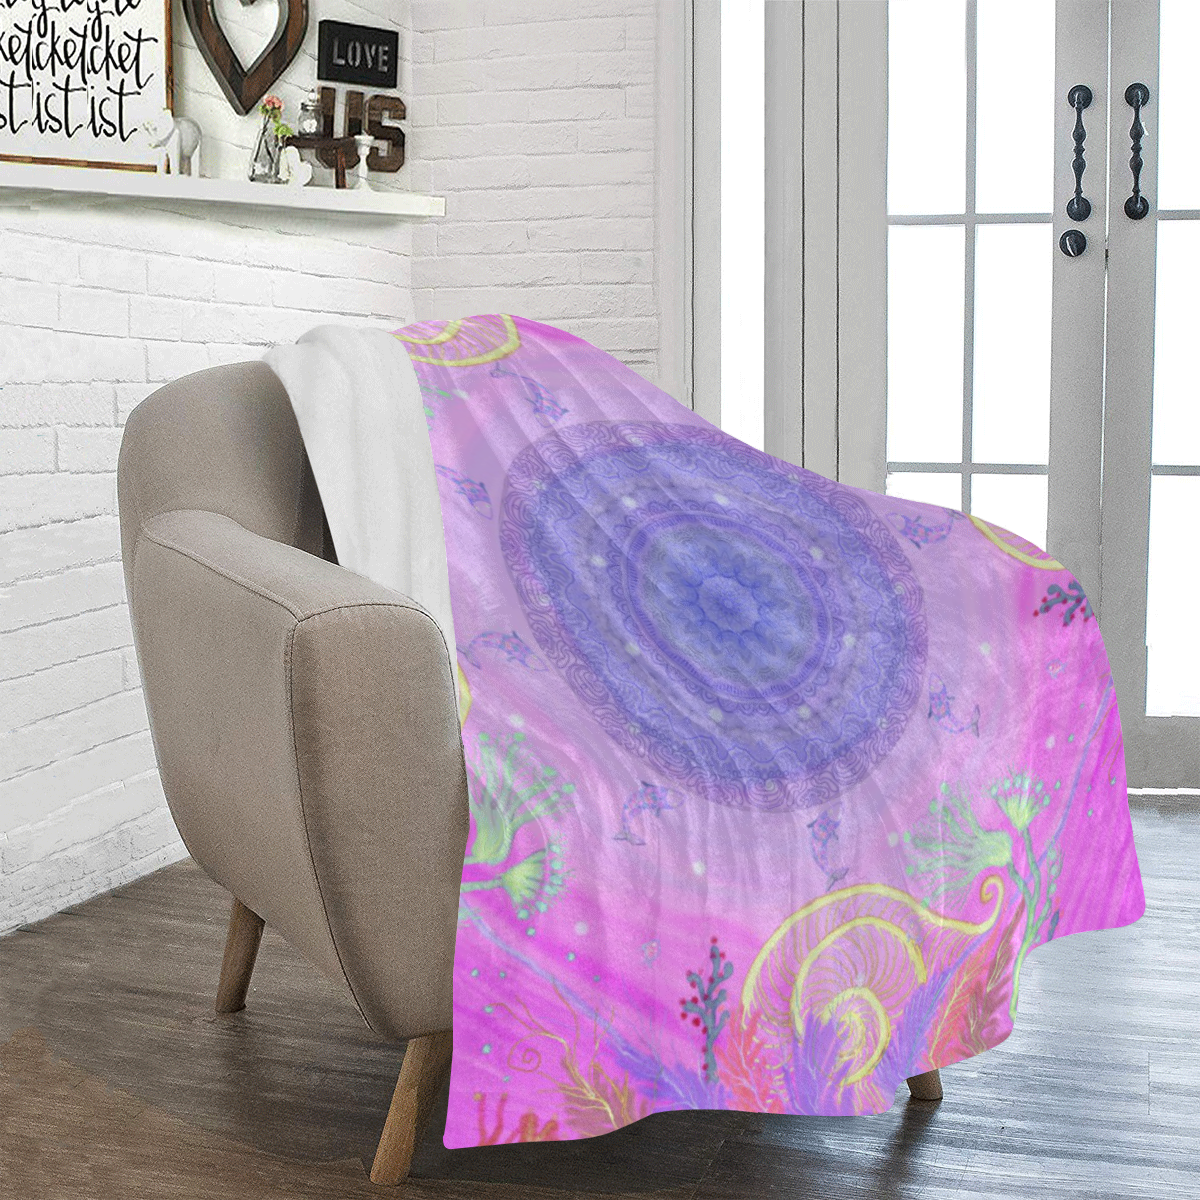 cosmos 6 Ultra-Soft Micro Fleece Blanket 43''x56''